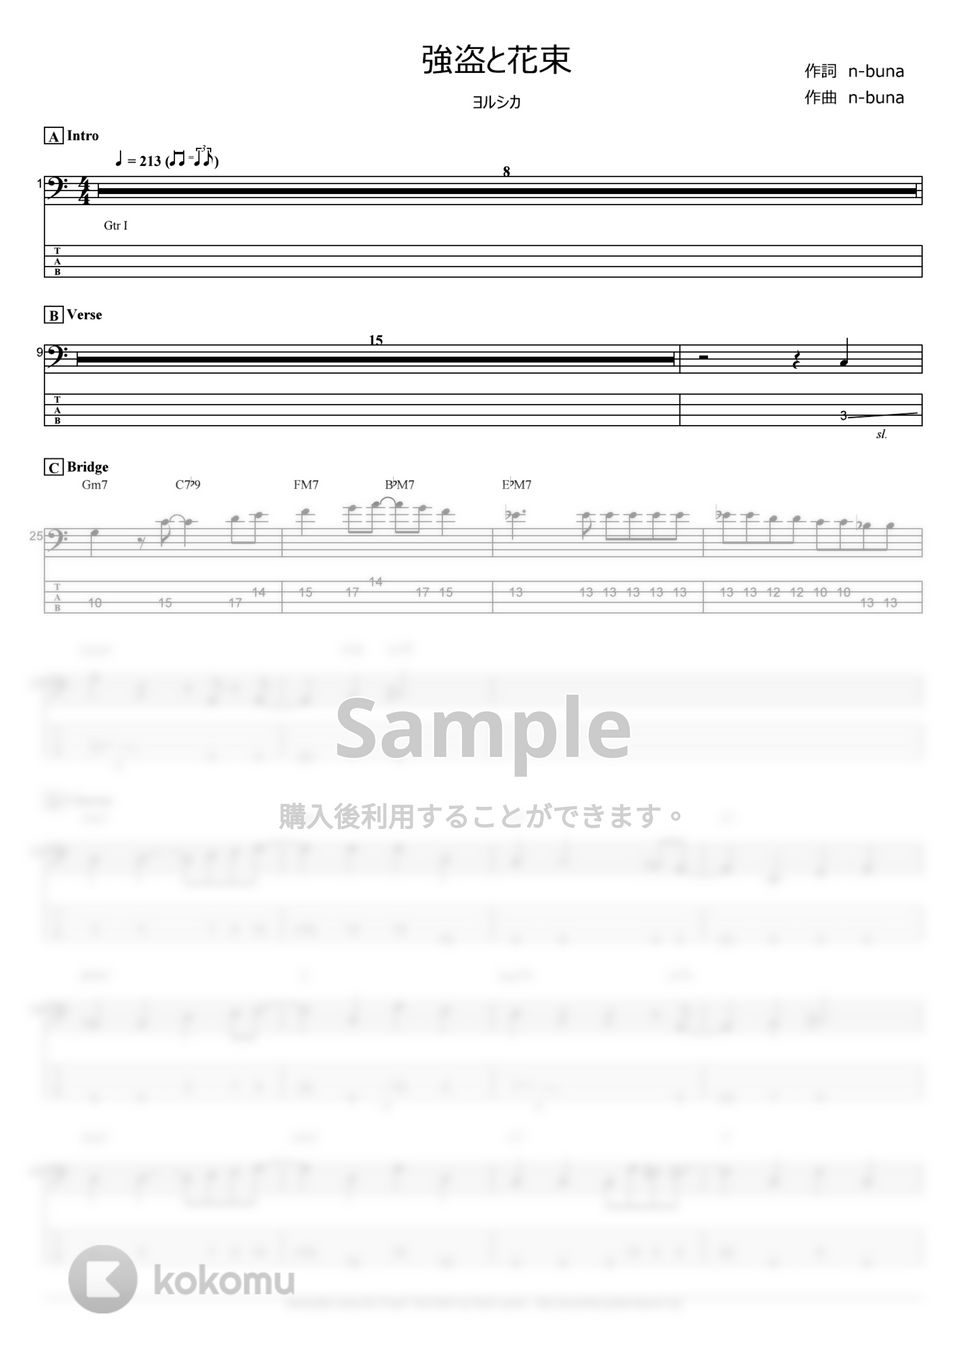 ヨルシカ - 強盗と花束 (ベース Tab譜 4弦) by T's bass score